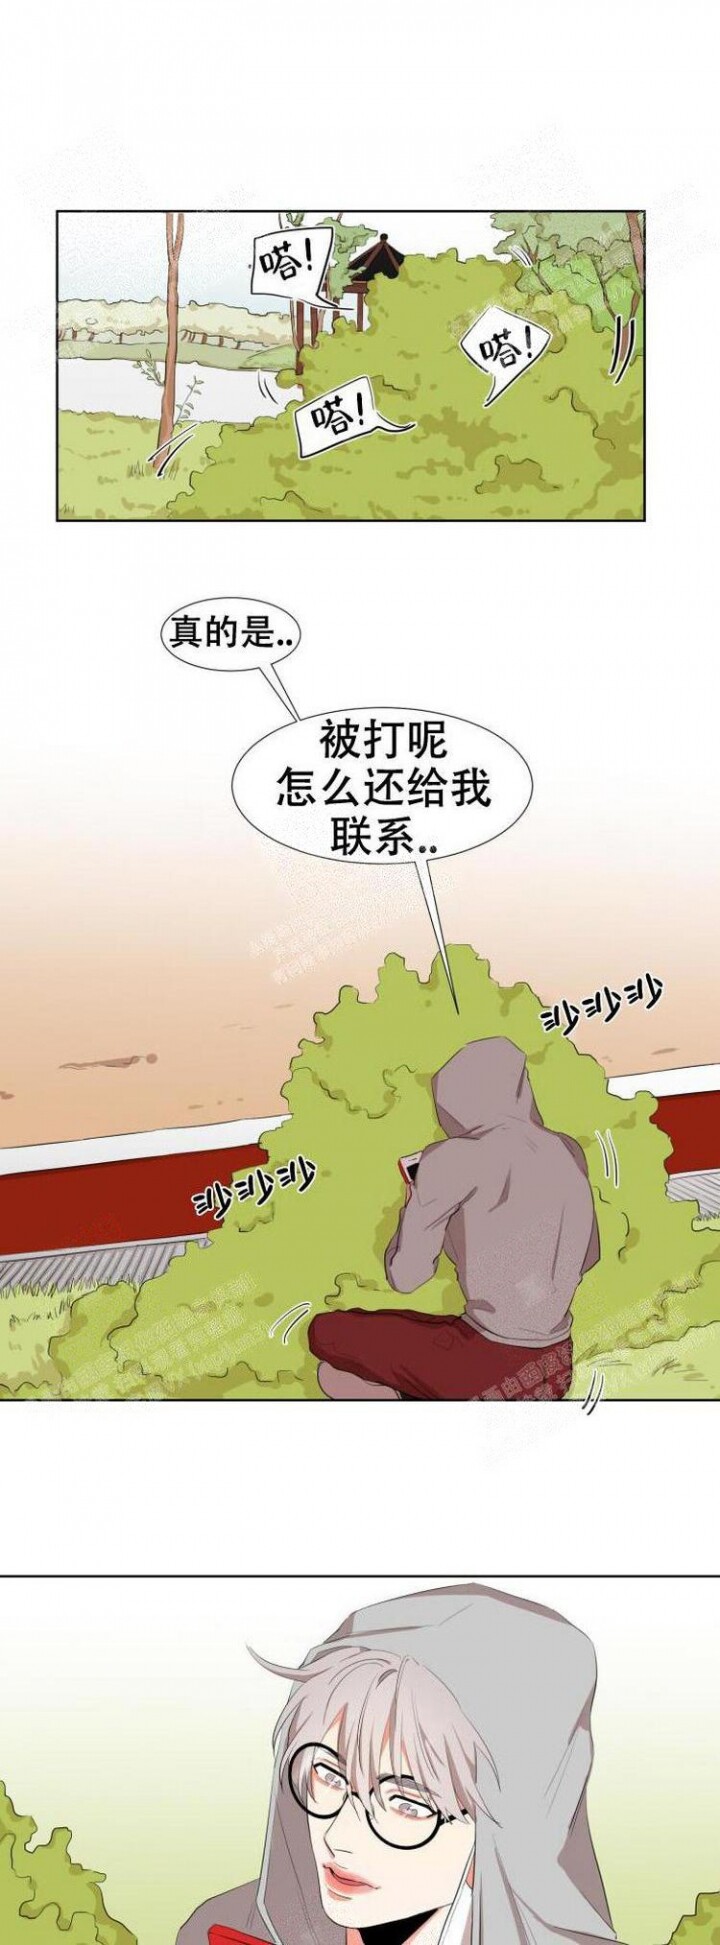 韩国污漫画 盲目約會 第10话 1